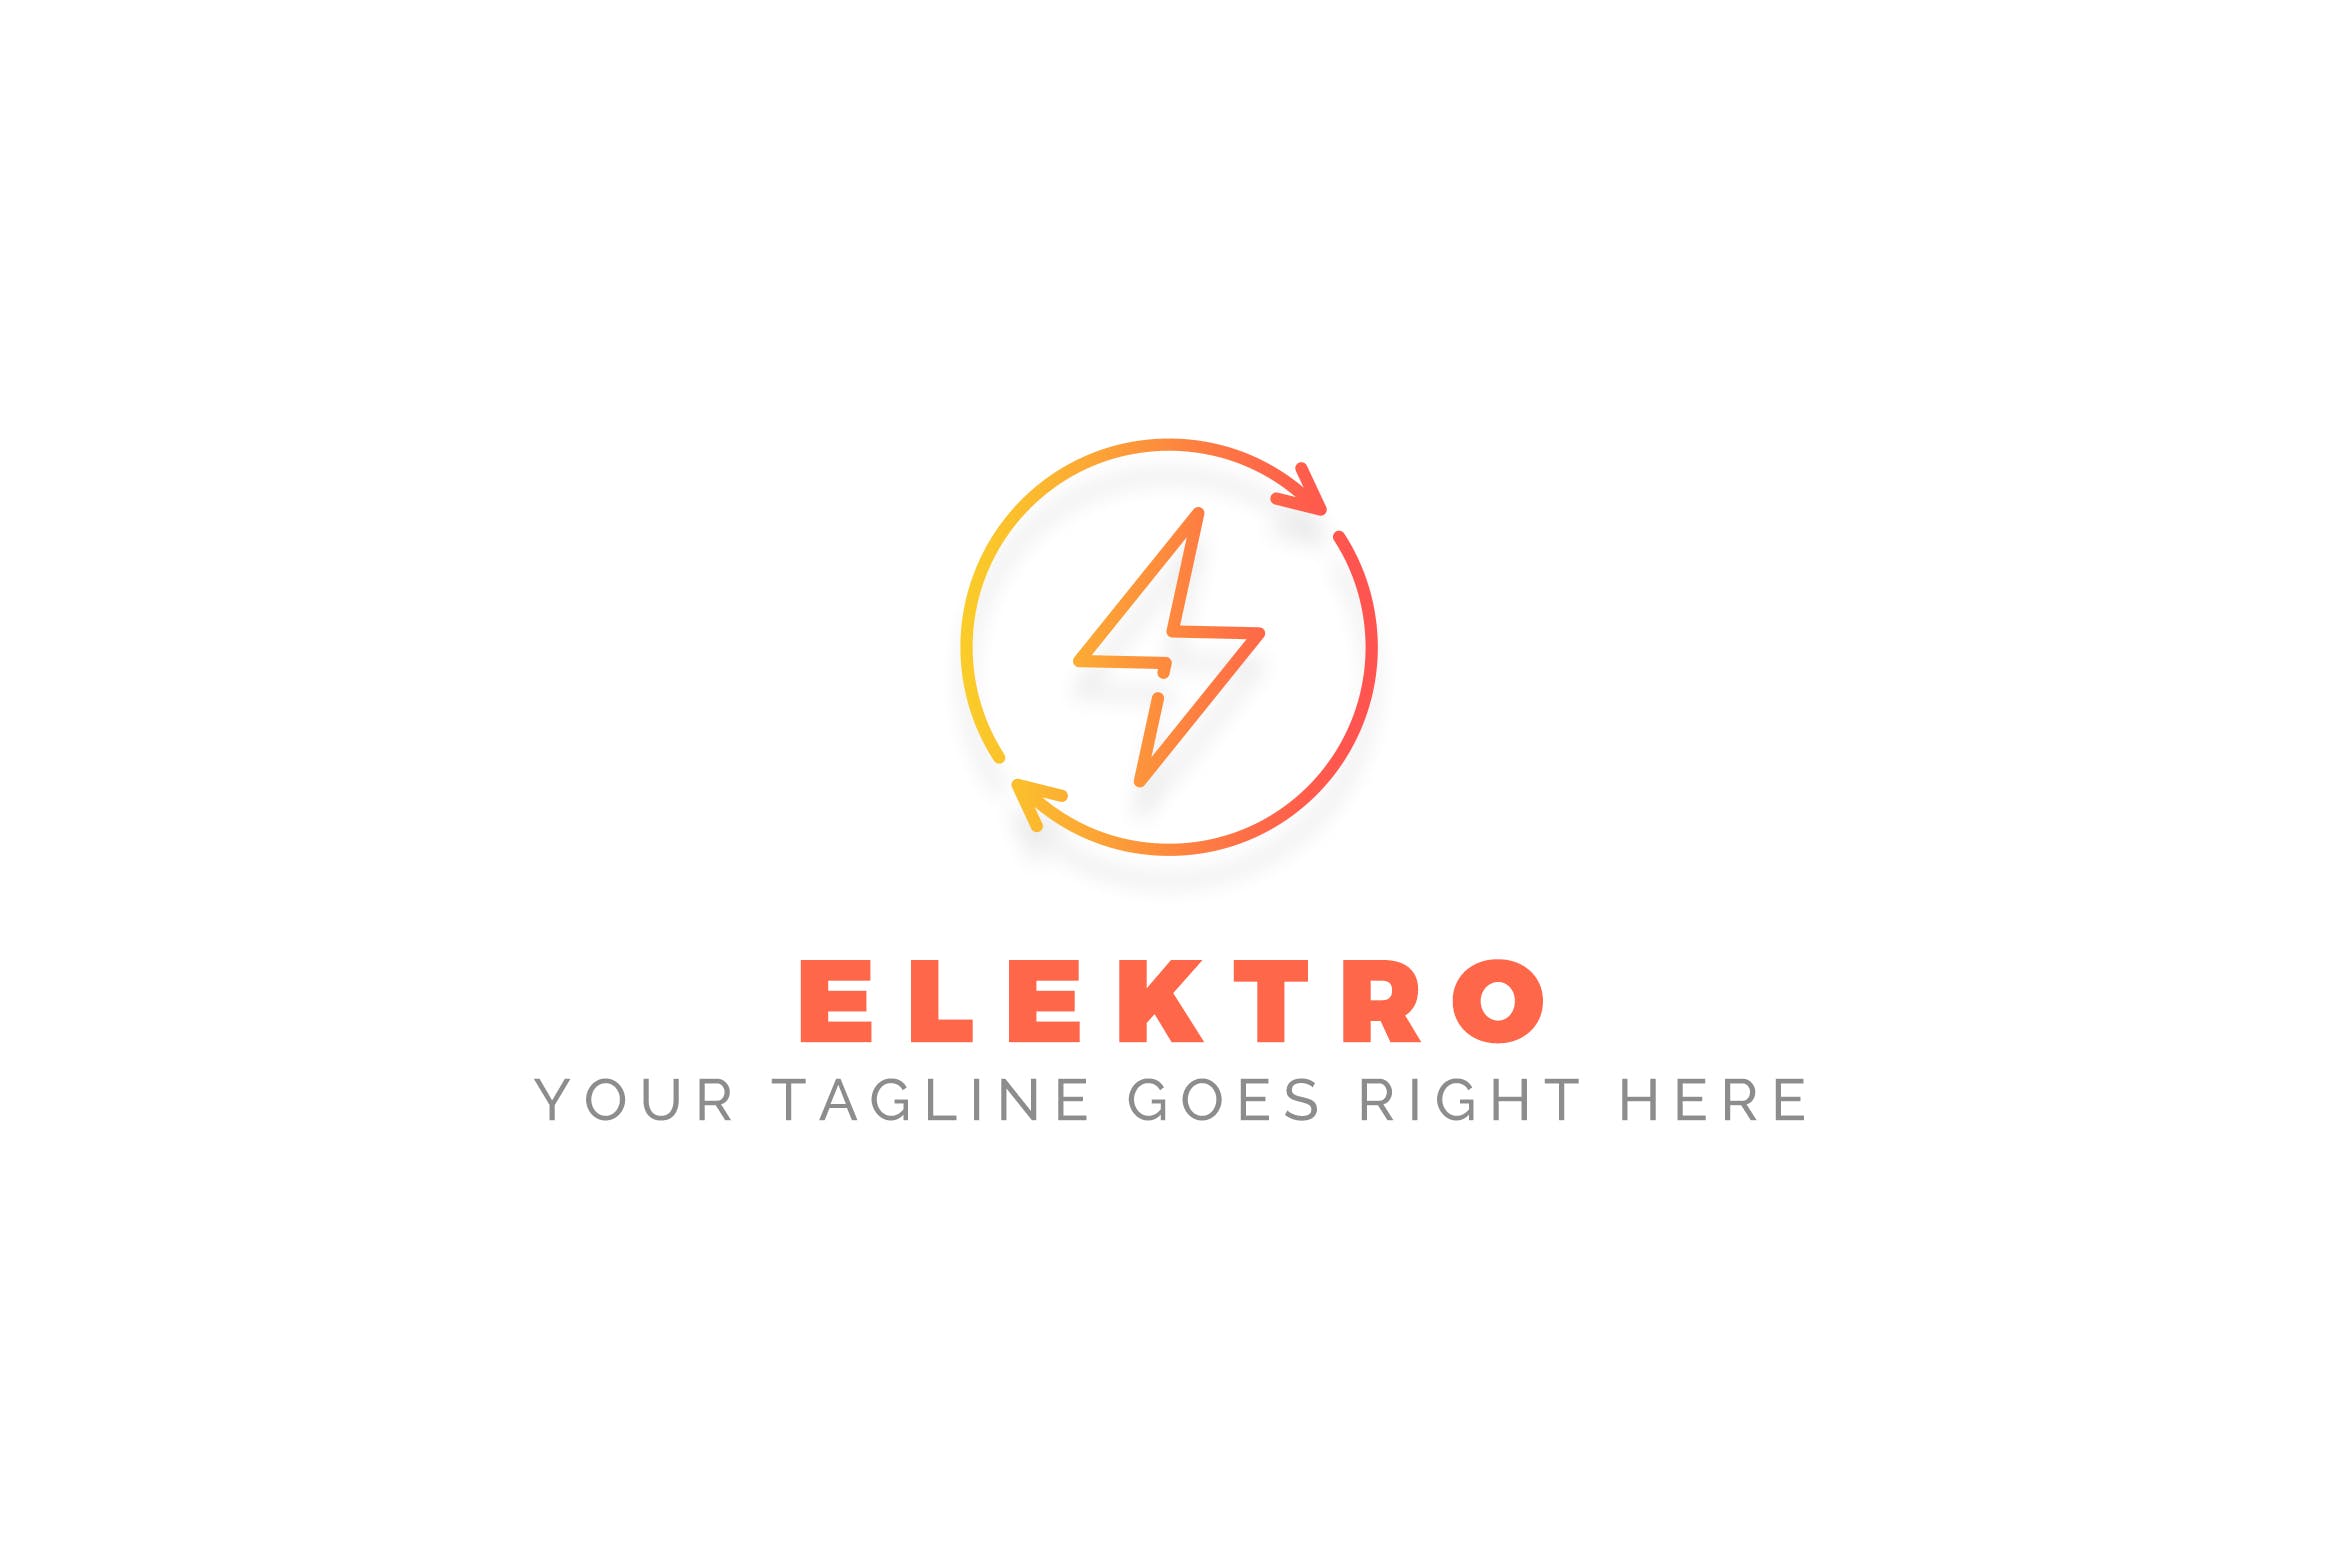 充电宝/移动电源/充电设备品牌Logo设计第一素材精选模板 Elektro – Electrician Logo Template插图